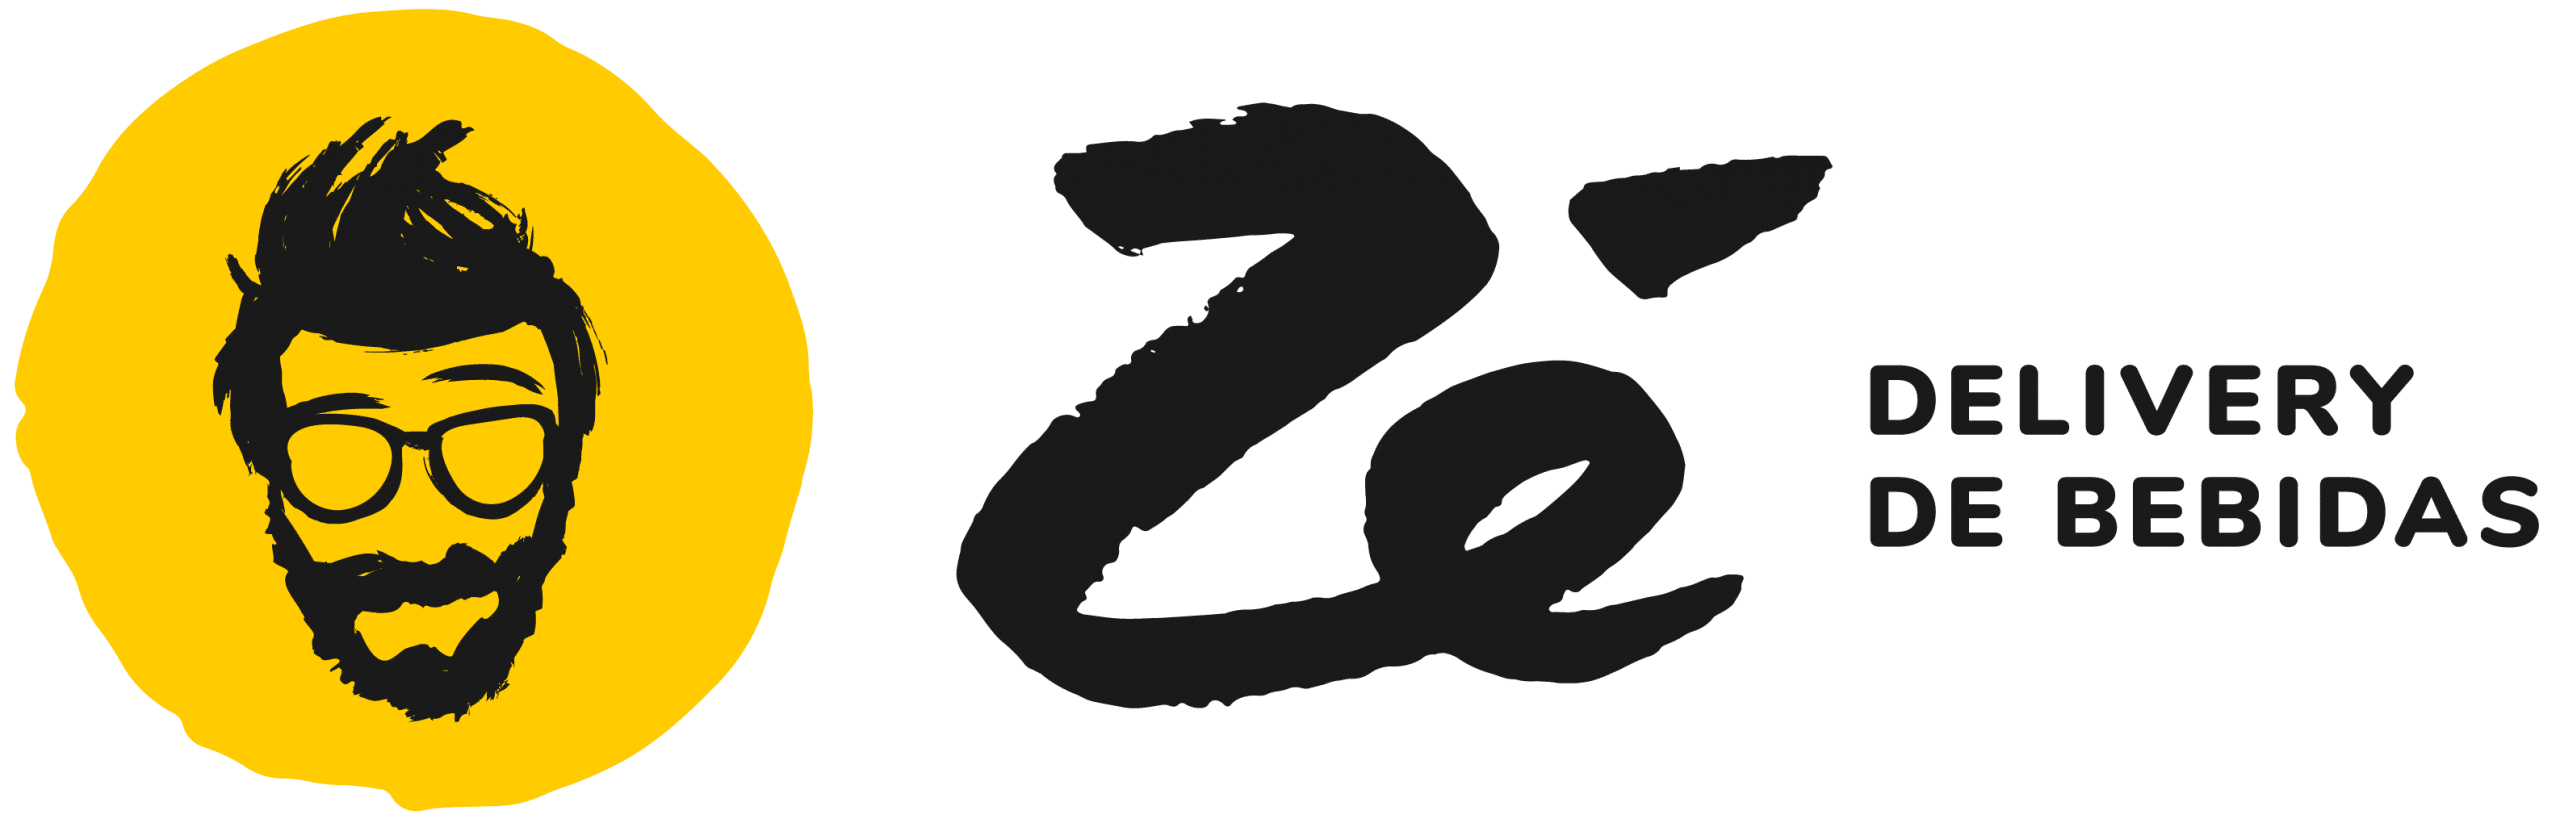 Aplicativo de entrega Zé Delivery / Logo divulgação